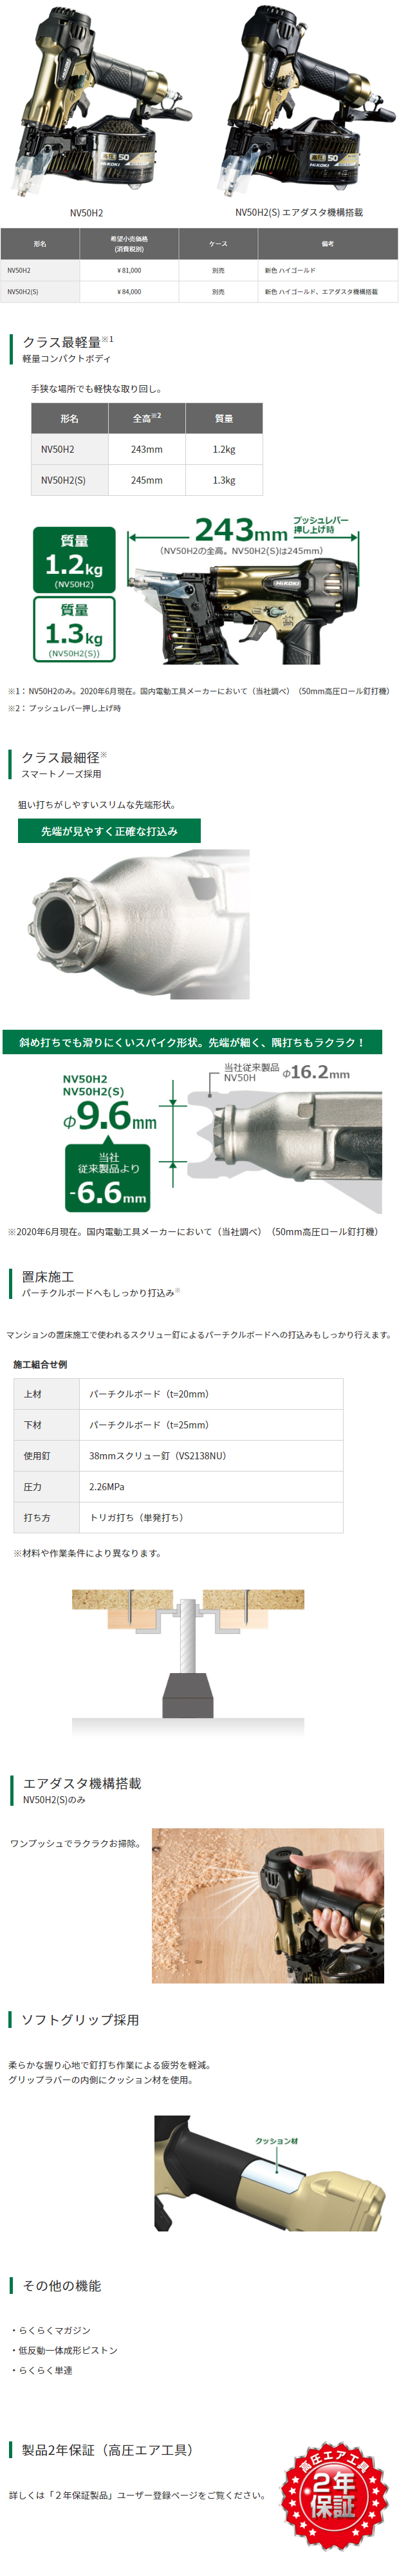 HiKOKI 高圧ロール釘打機 NV50H2 電動工具・エアー工具・大工道具